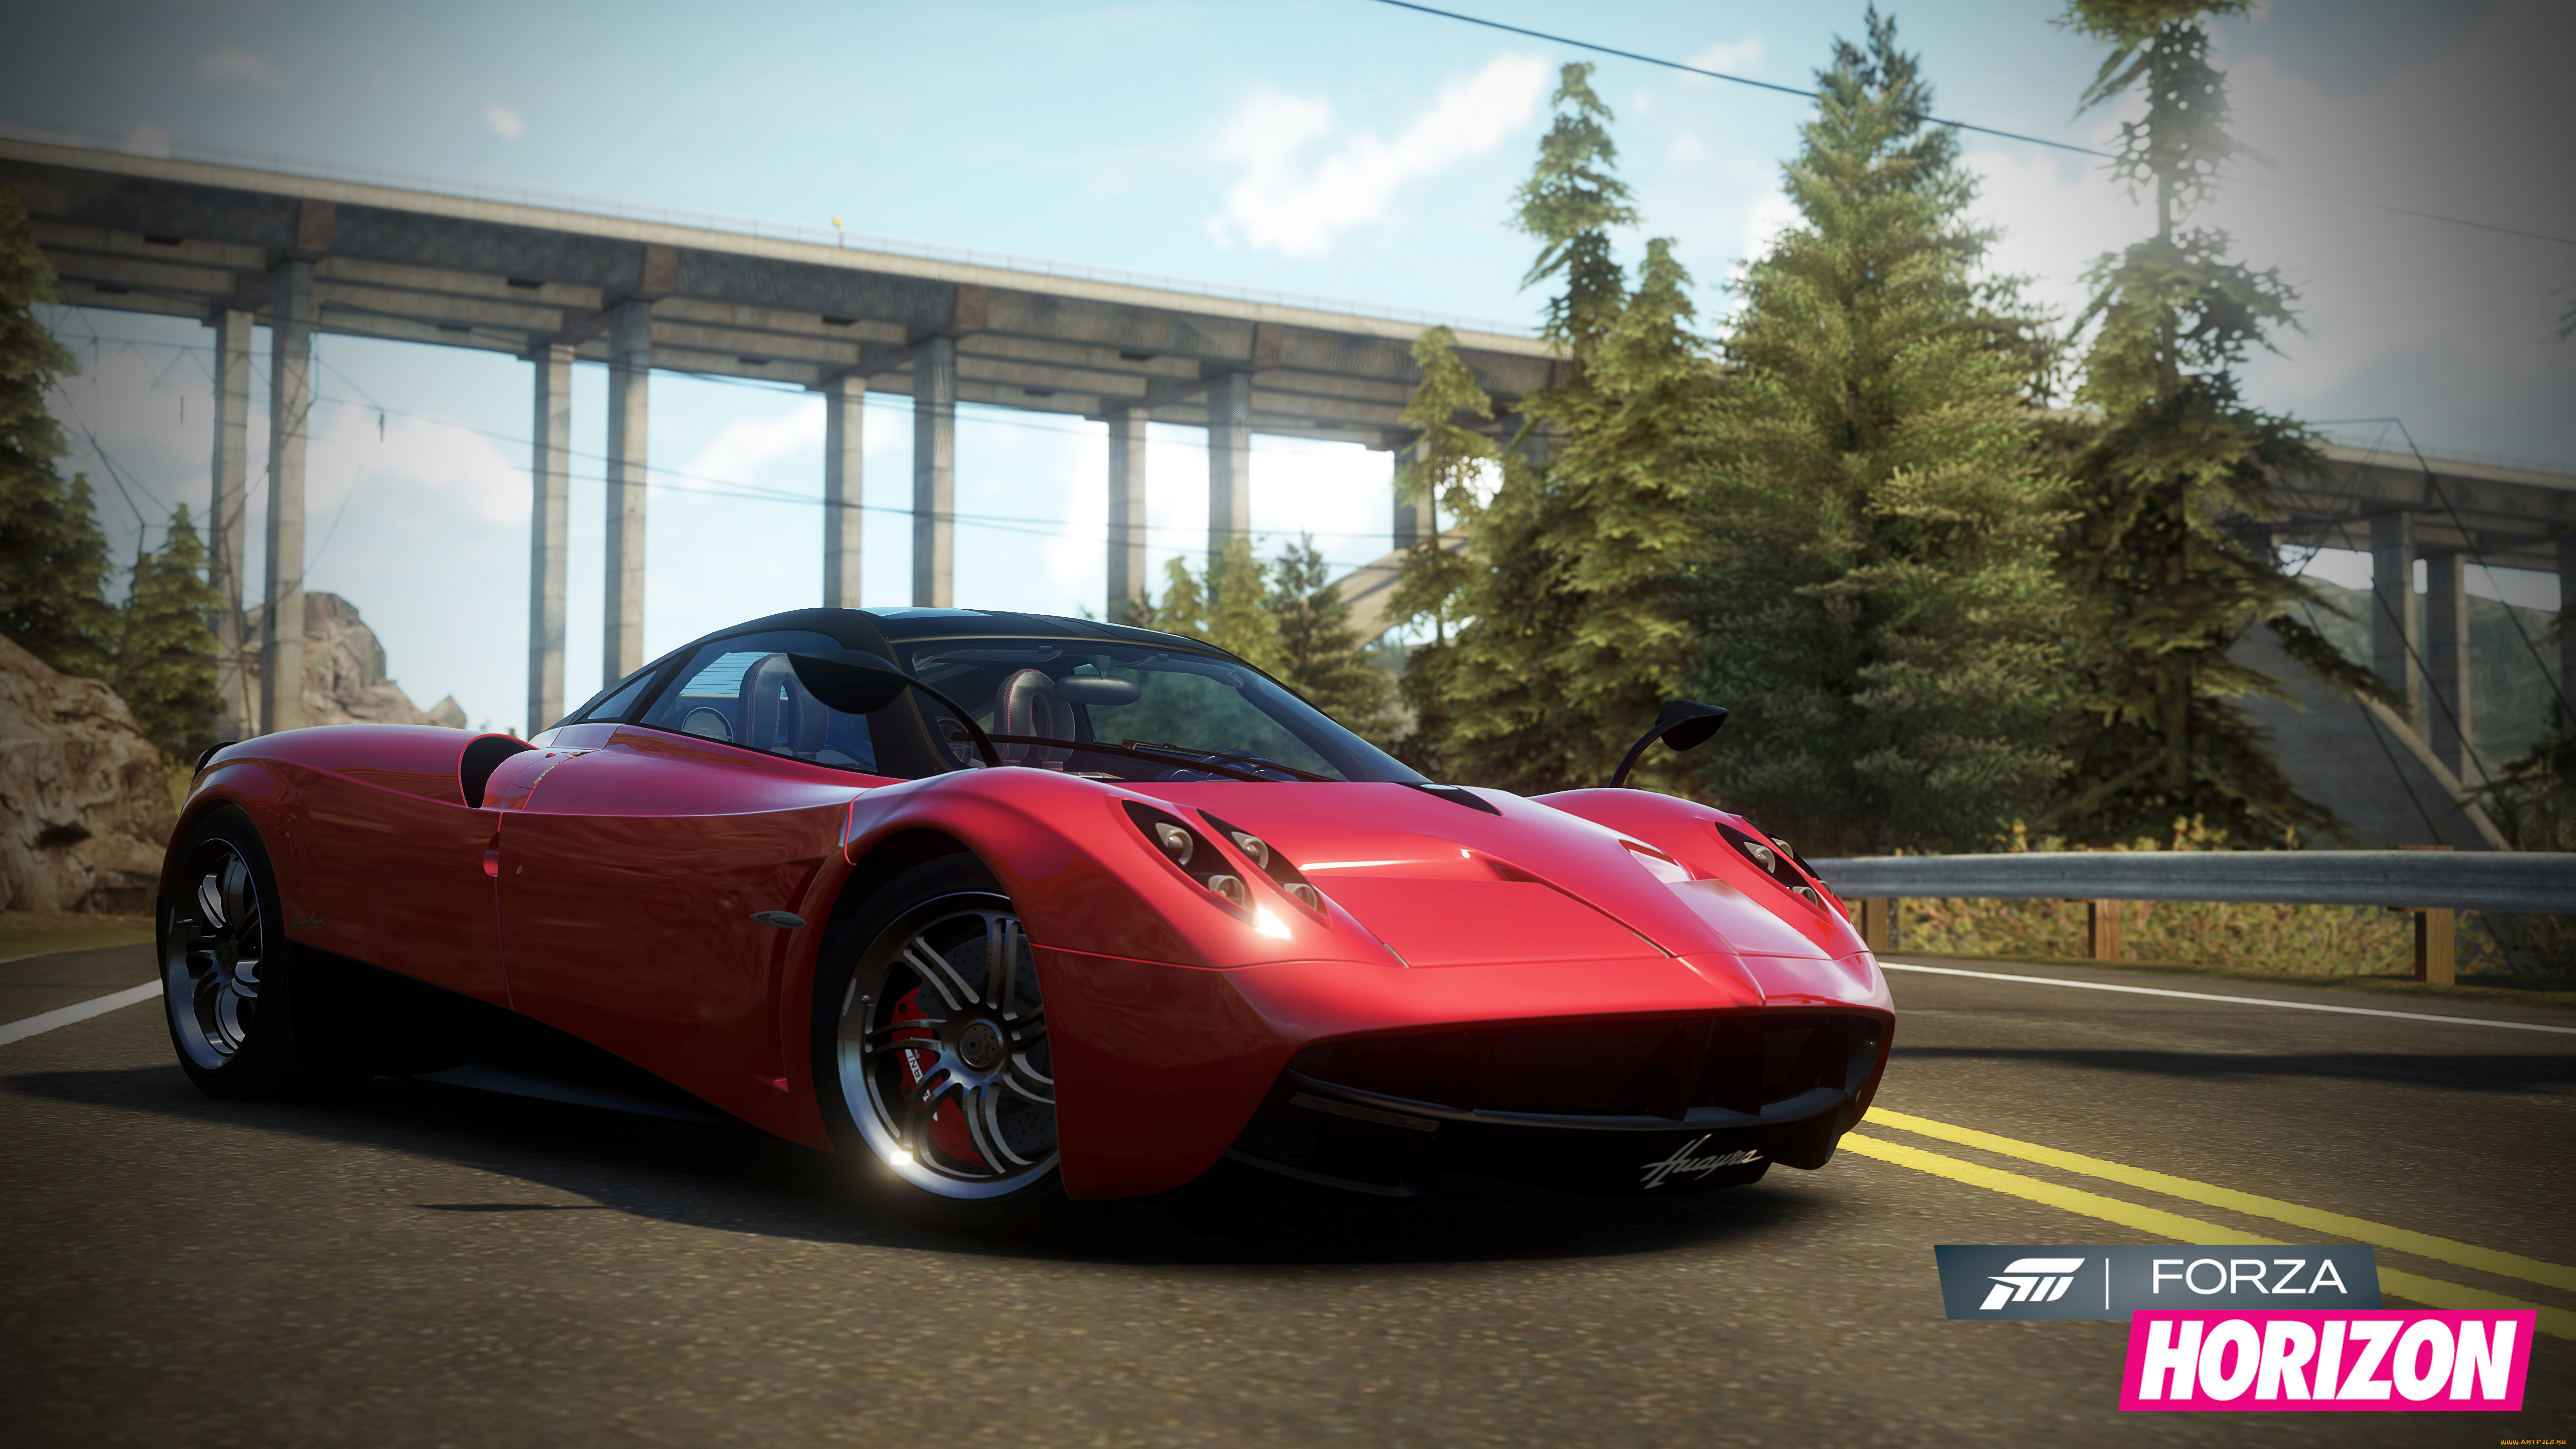 Forza horizon igruha. Forza Horizon Xbox 360. Forza Horizon 4 Pagani Huayra. Forza Horizon 2 Xbox 360. Forza Horizon 4 Xbox 360.